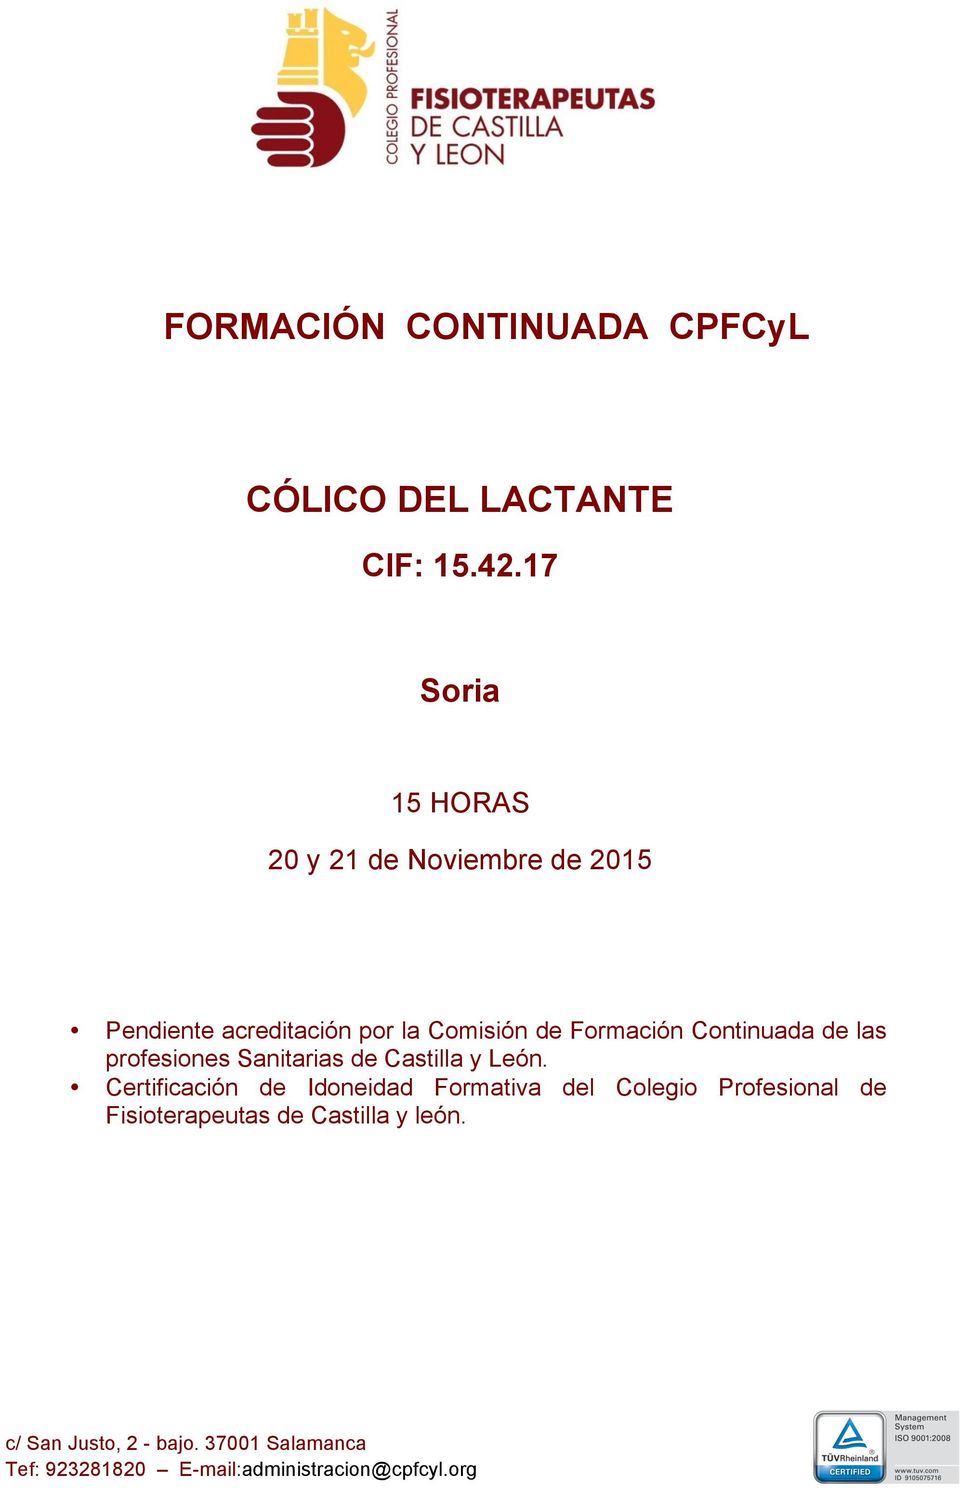 Comisión de Formación Continuada de las profesiones Sanitarias de Castilla y